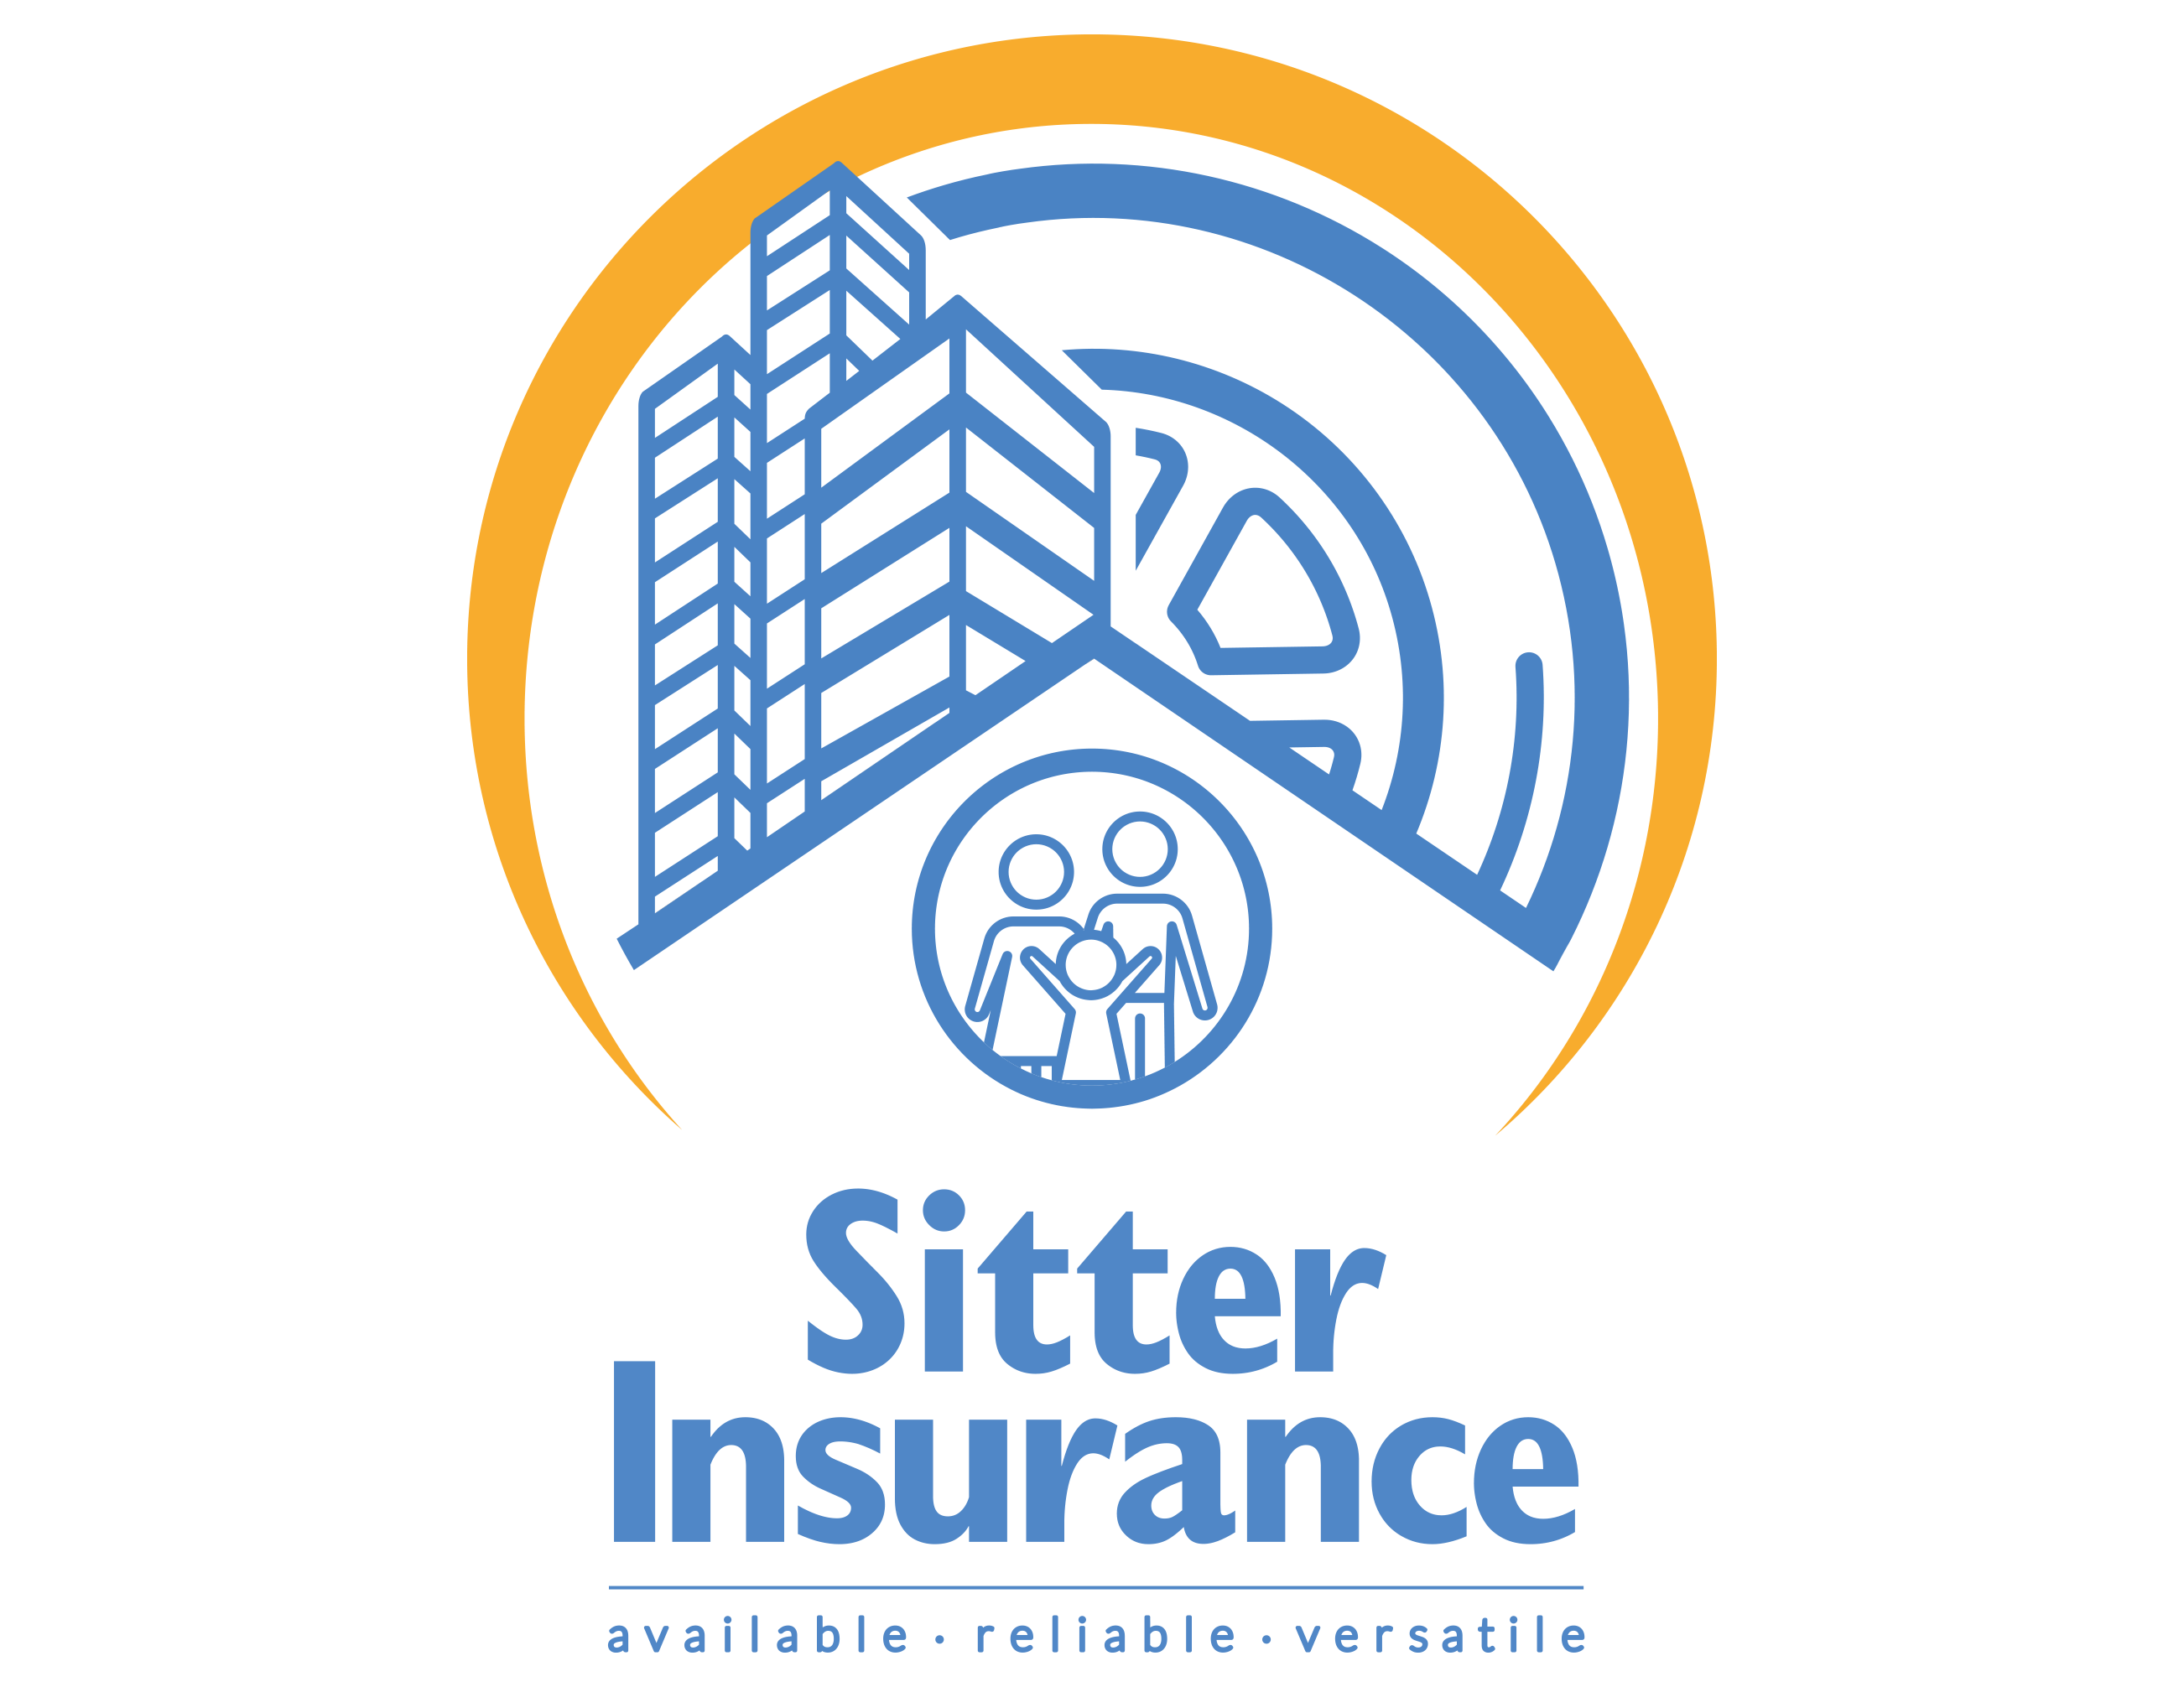 Sitter Insurance logo square